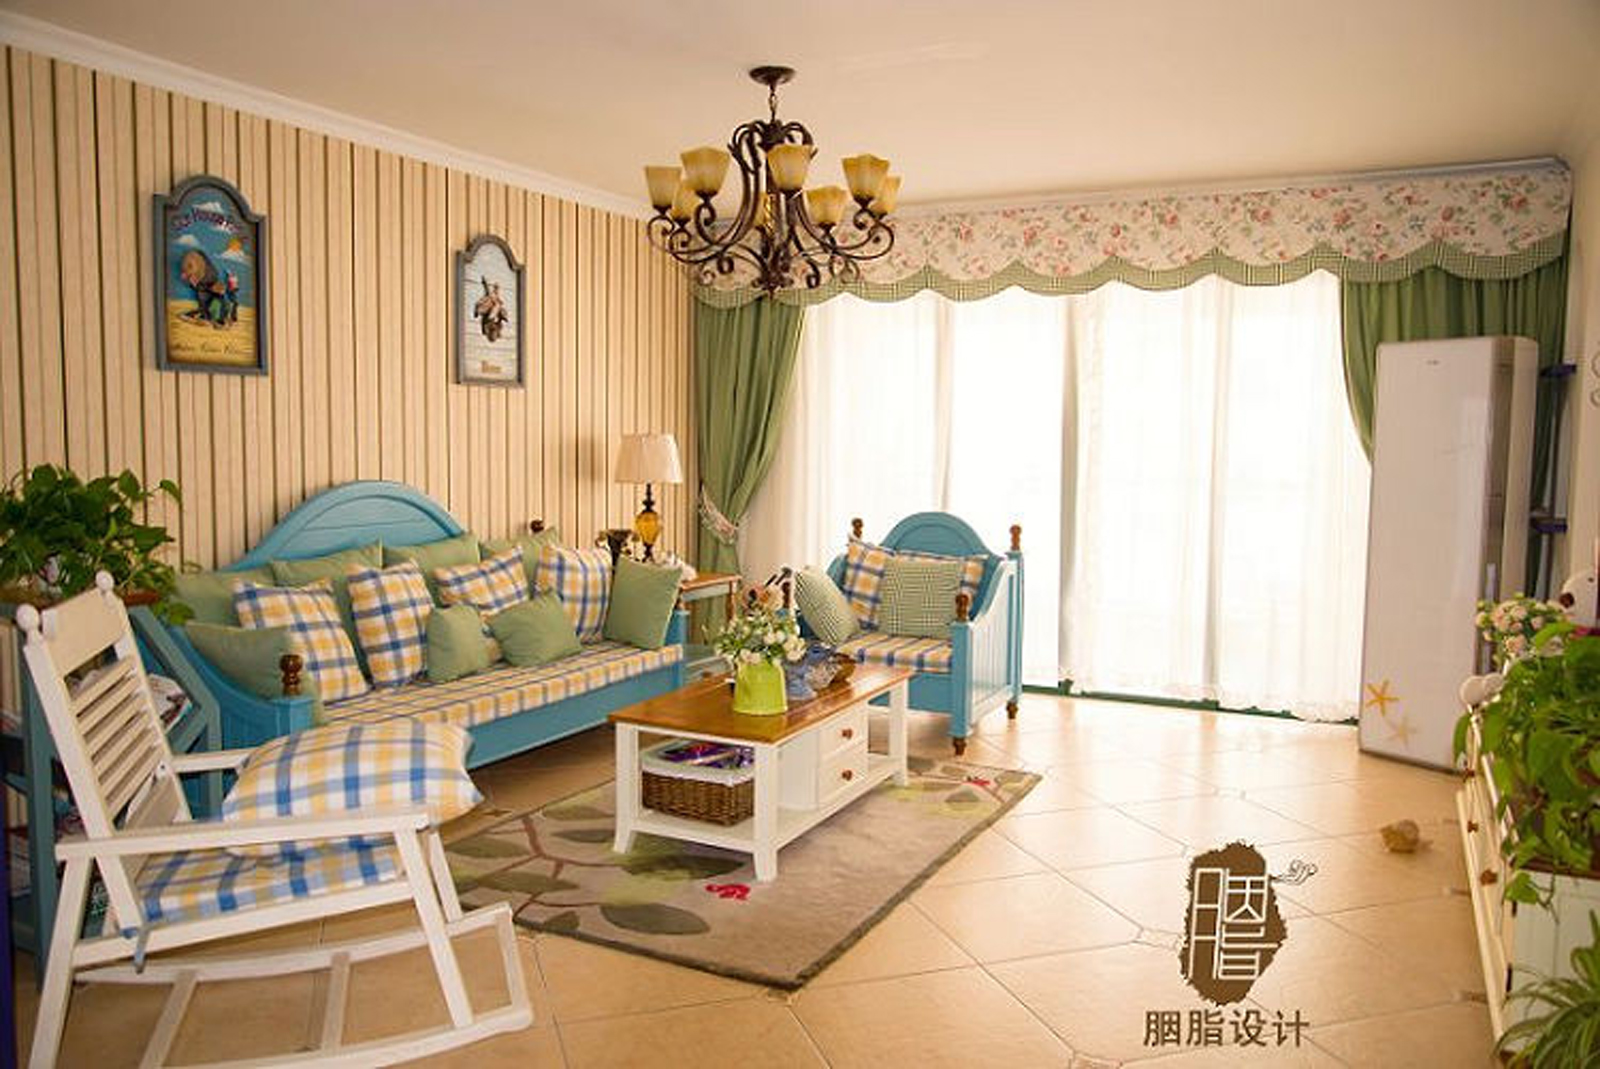 胭脂设计 爱的味道 广西桂林 地中海风格 婚房 120平 蓝色 绿植 软装设计 客厅图片来自设计师胭脂在爱的味道-地中海婚房的分享